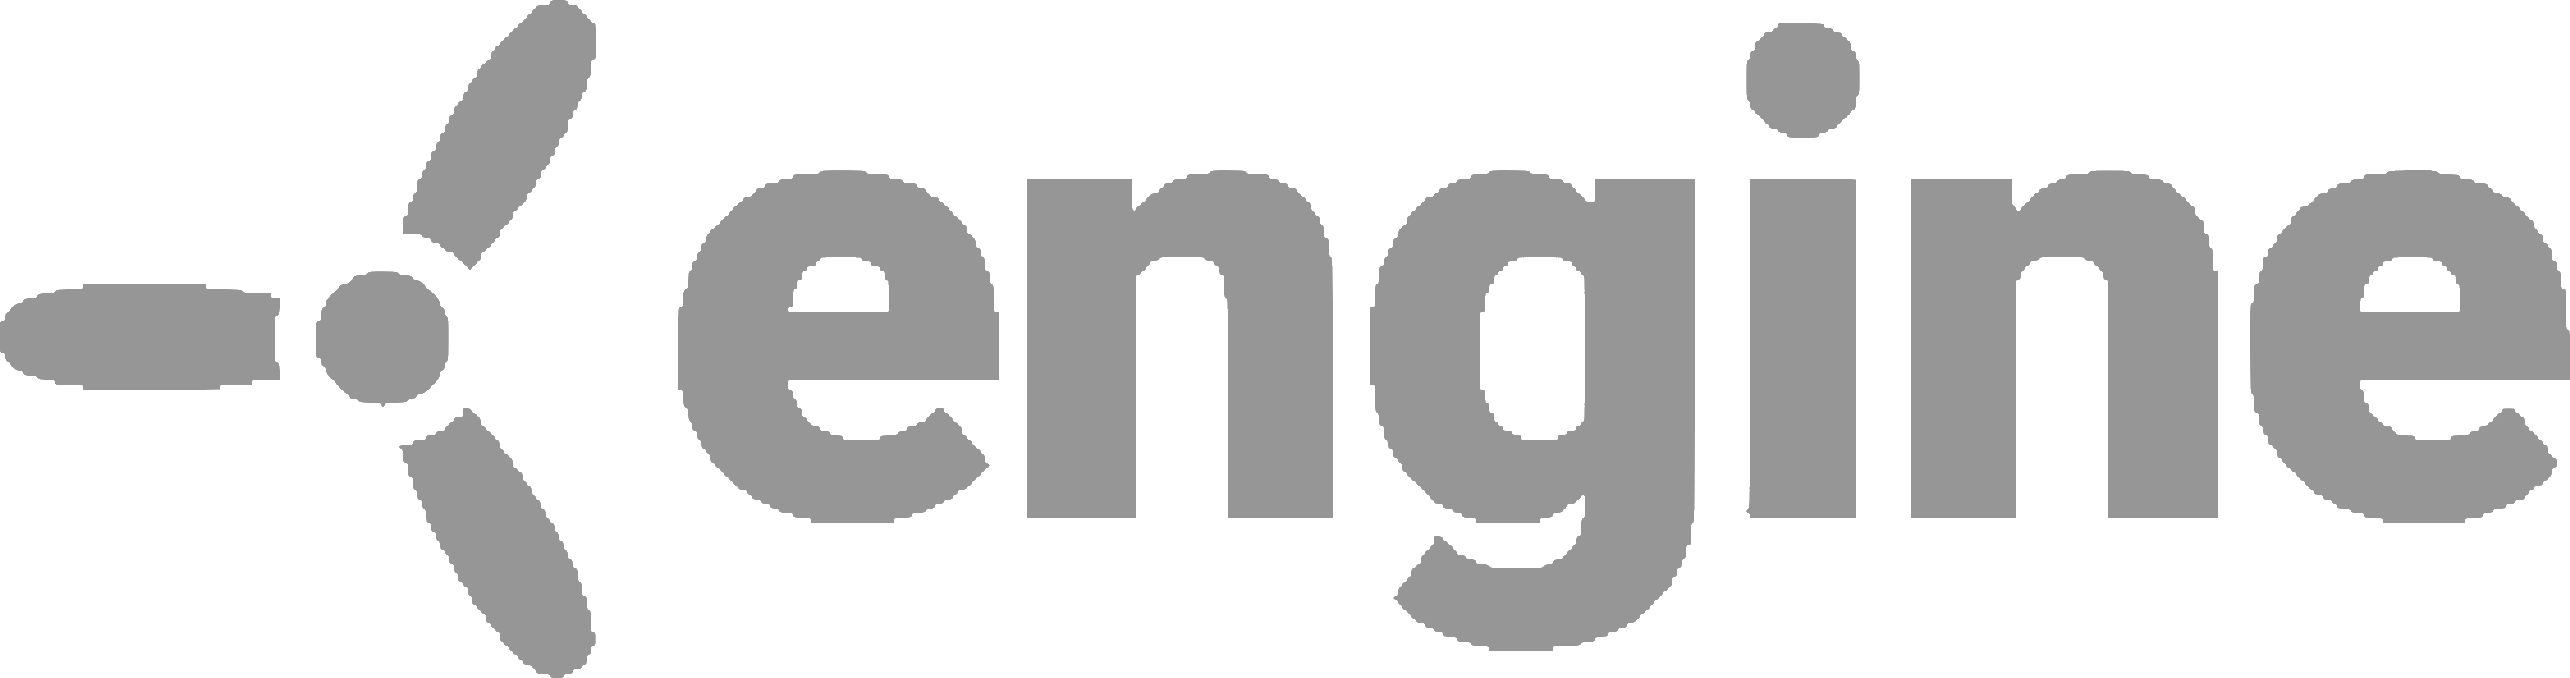 Engine logo logo